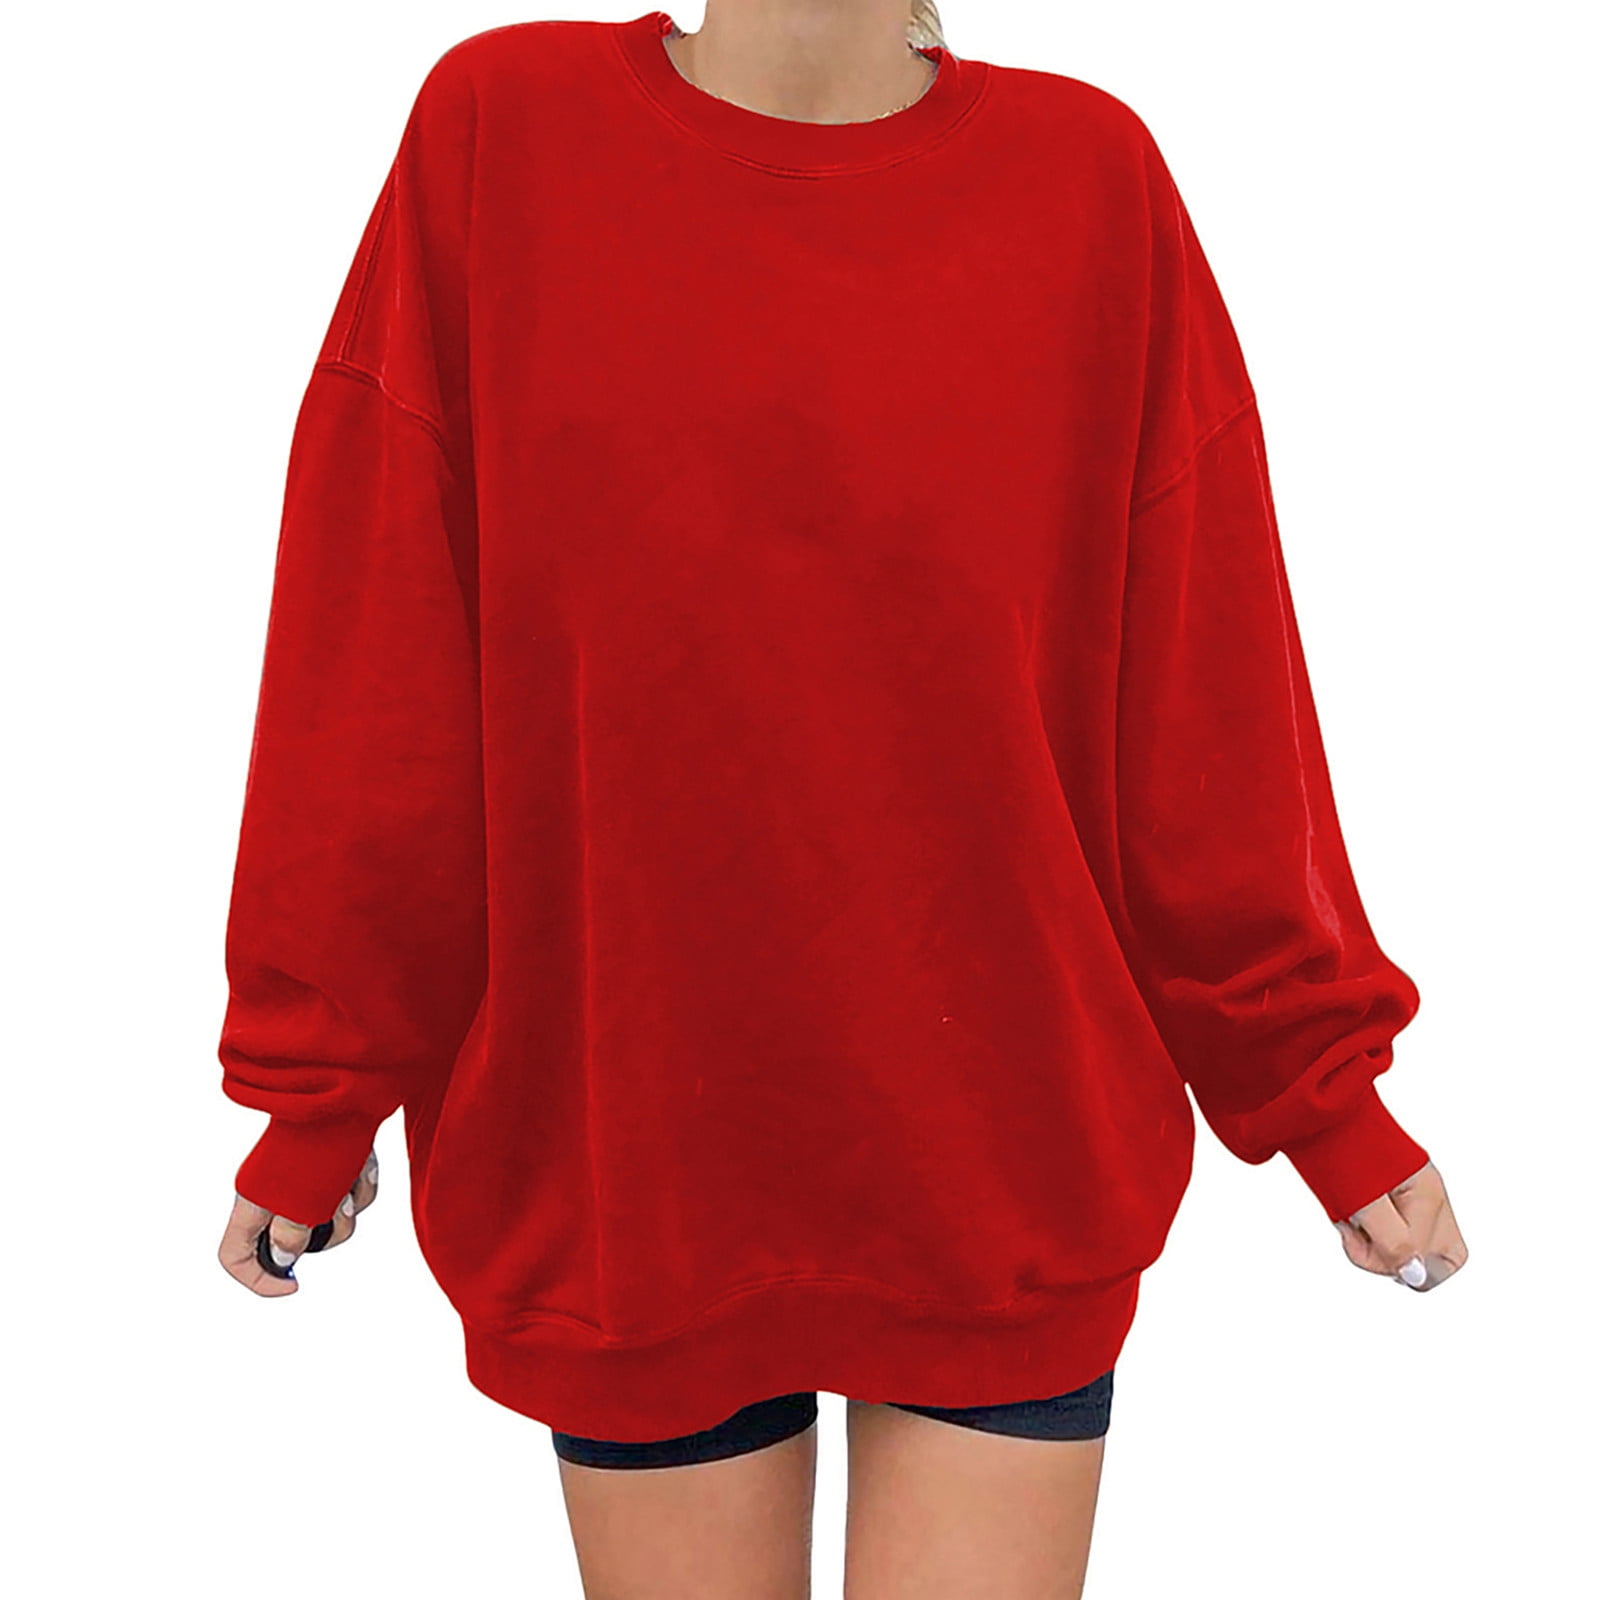 Crewneck Sweatshirt Women Long S1eeve Pullover Sweatshirts Solid Red L